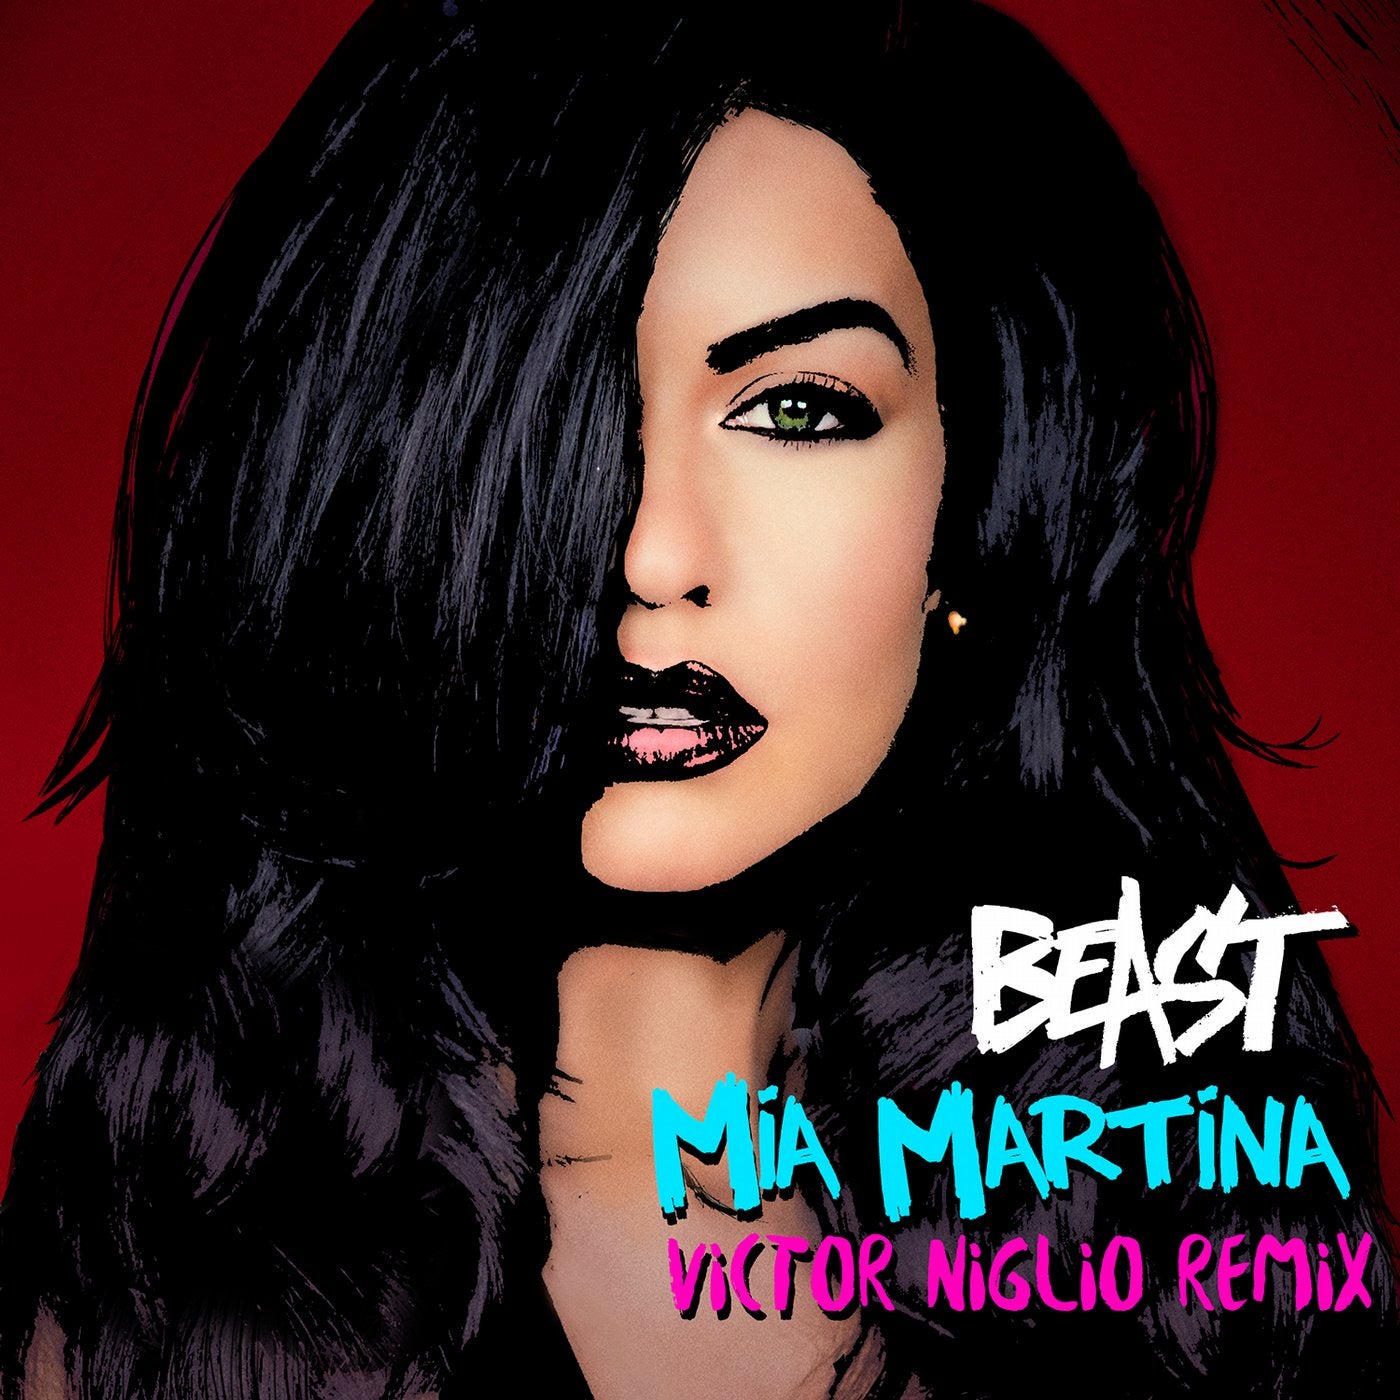 Mias feat. Mia Martina. Mia Martina Beast.